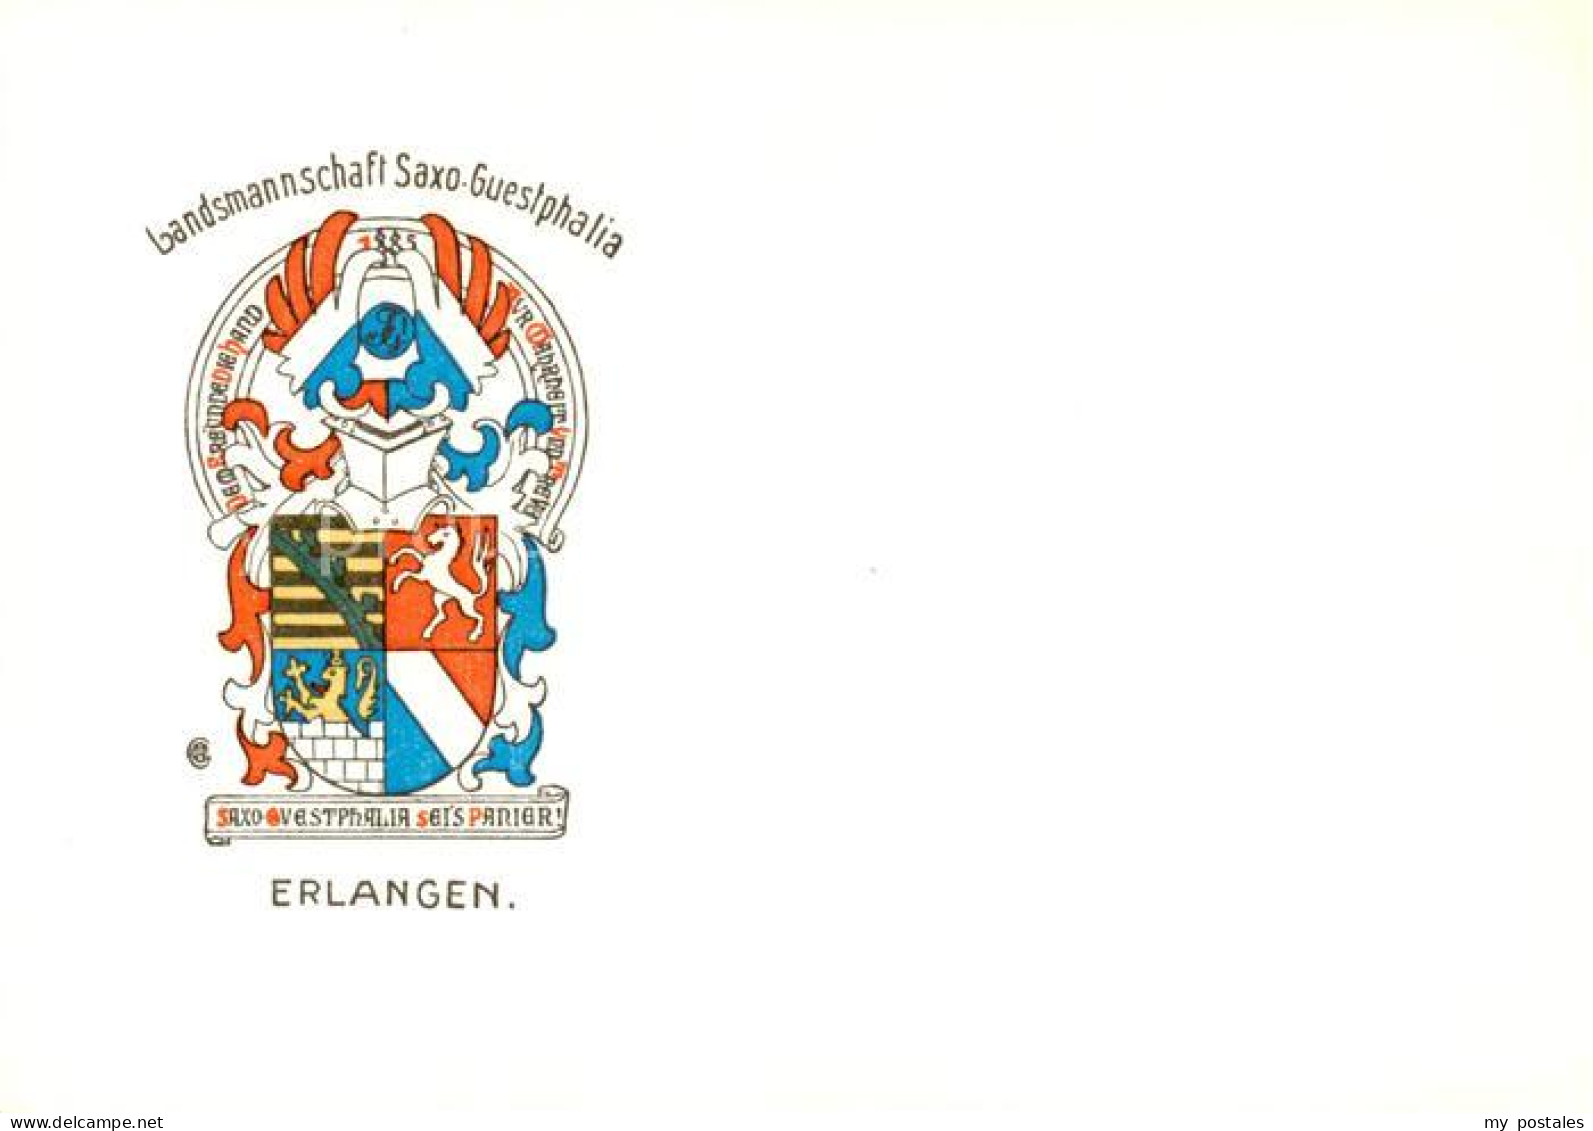 73853639 Erlangen Landsmannschaft Saxo Guestphalia Erlangen - Erlangen